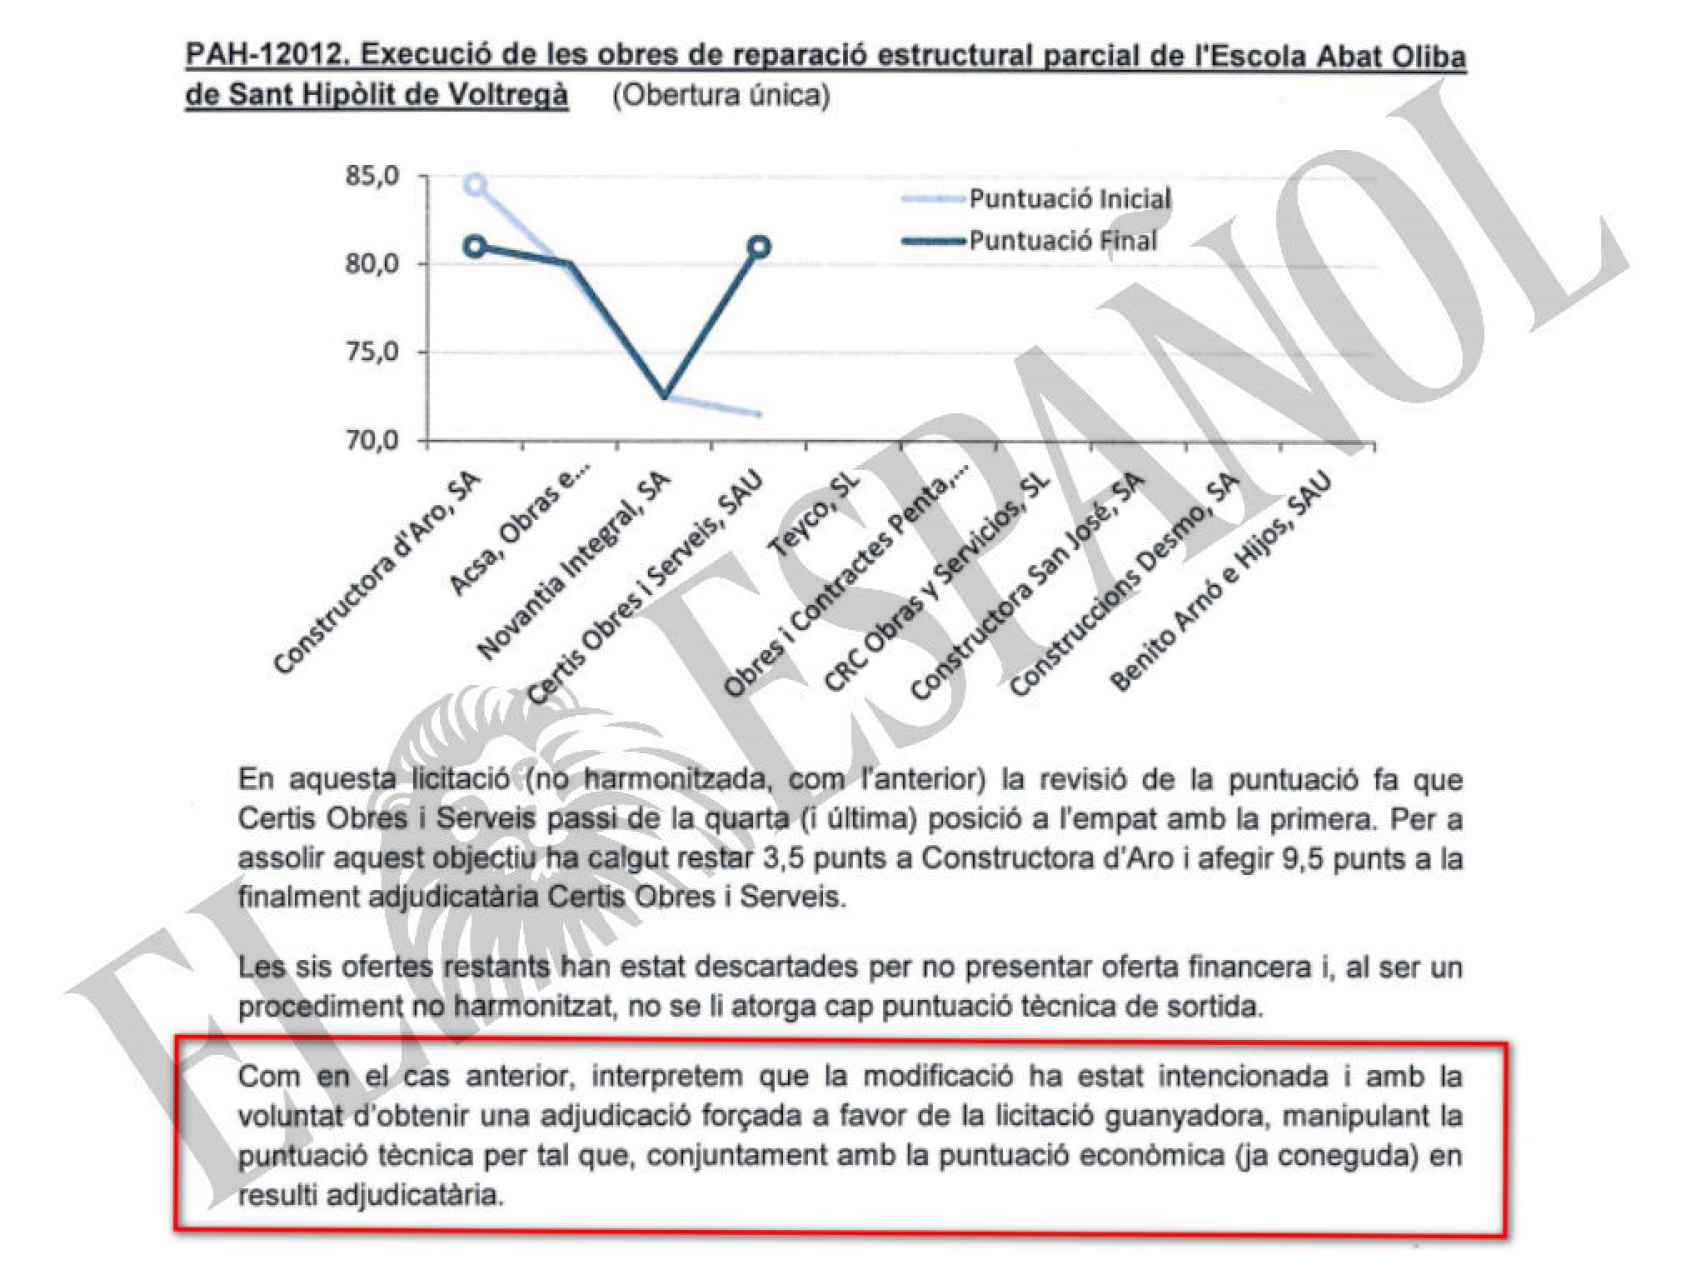 DOCUMENTO Nº 10. Extracto del informe donde los funcionarios de la Generalitat confirman el amaño de la obra de un colegio público.